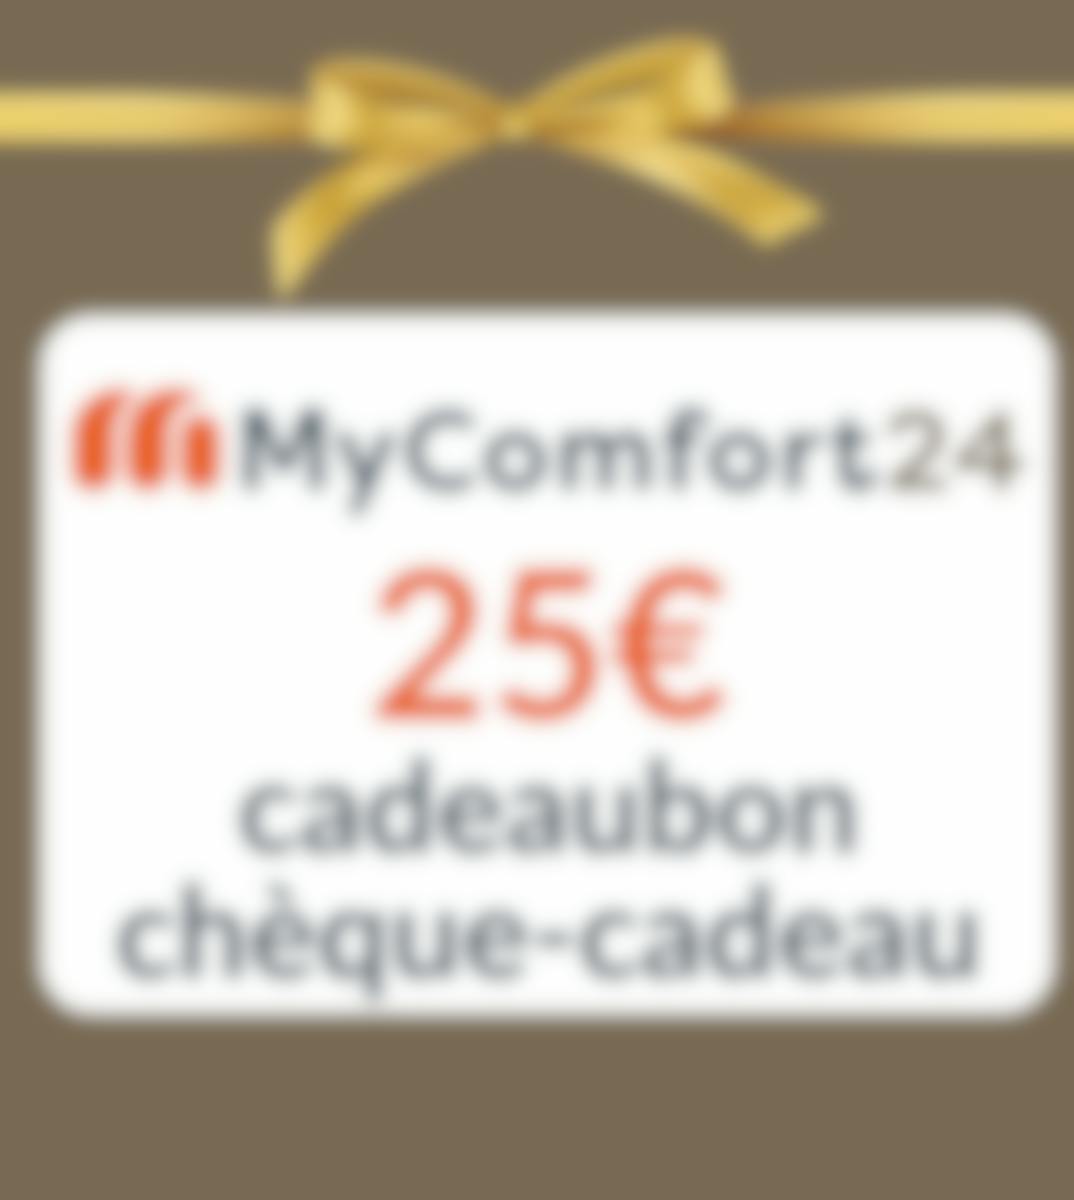 MyComfort24 chèque-cadeau 25€